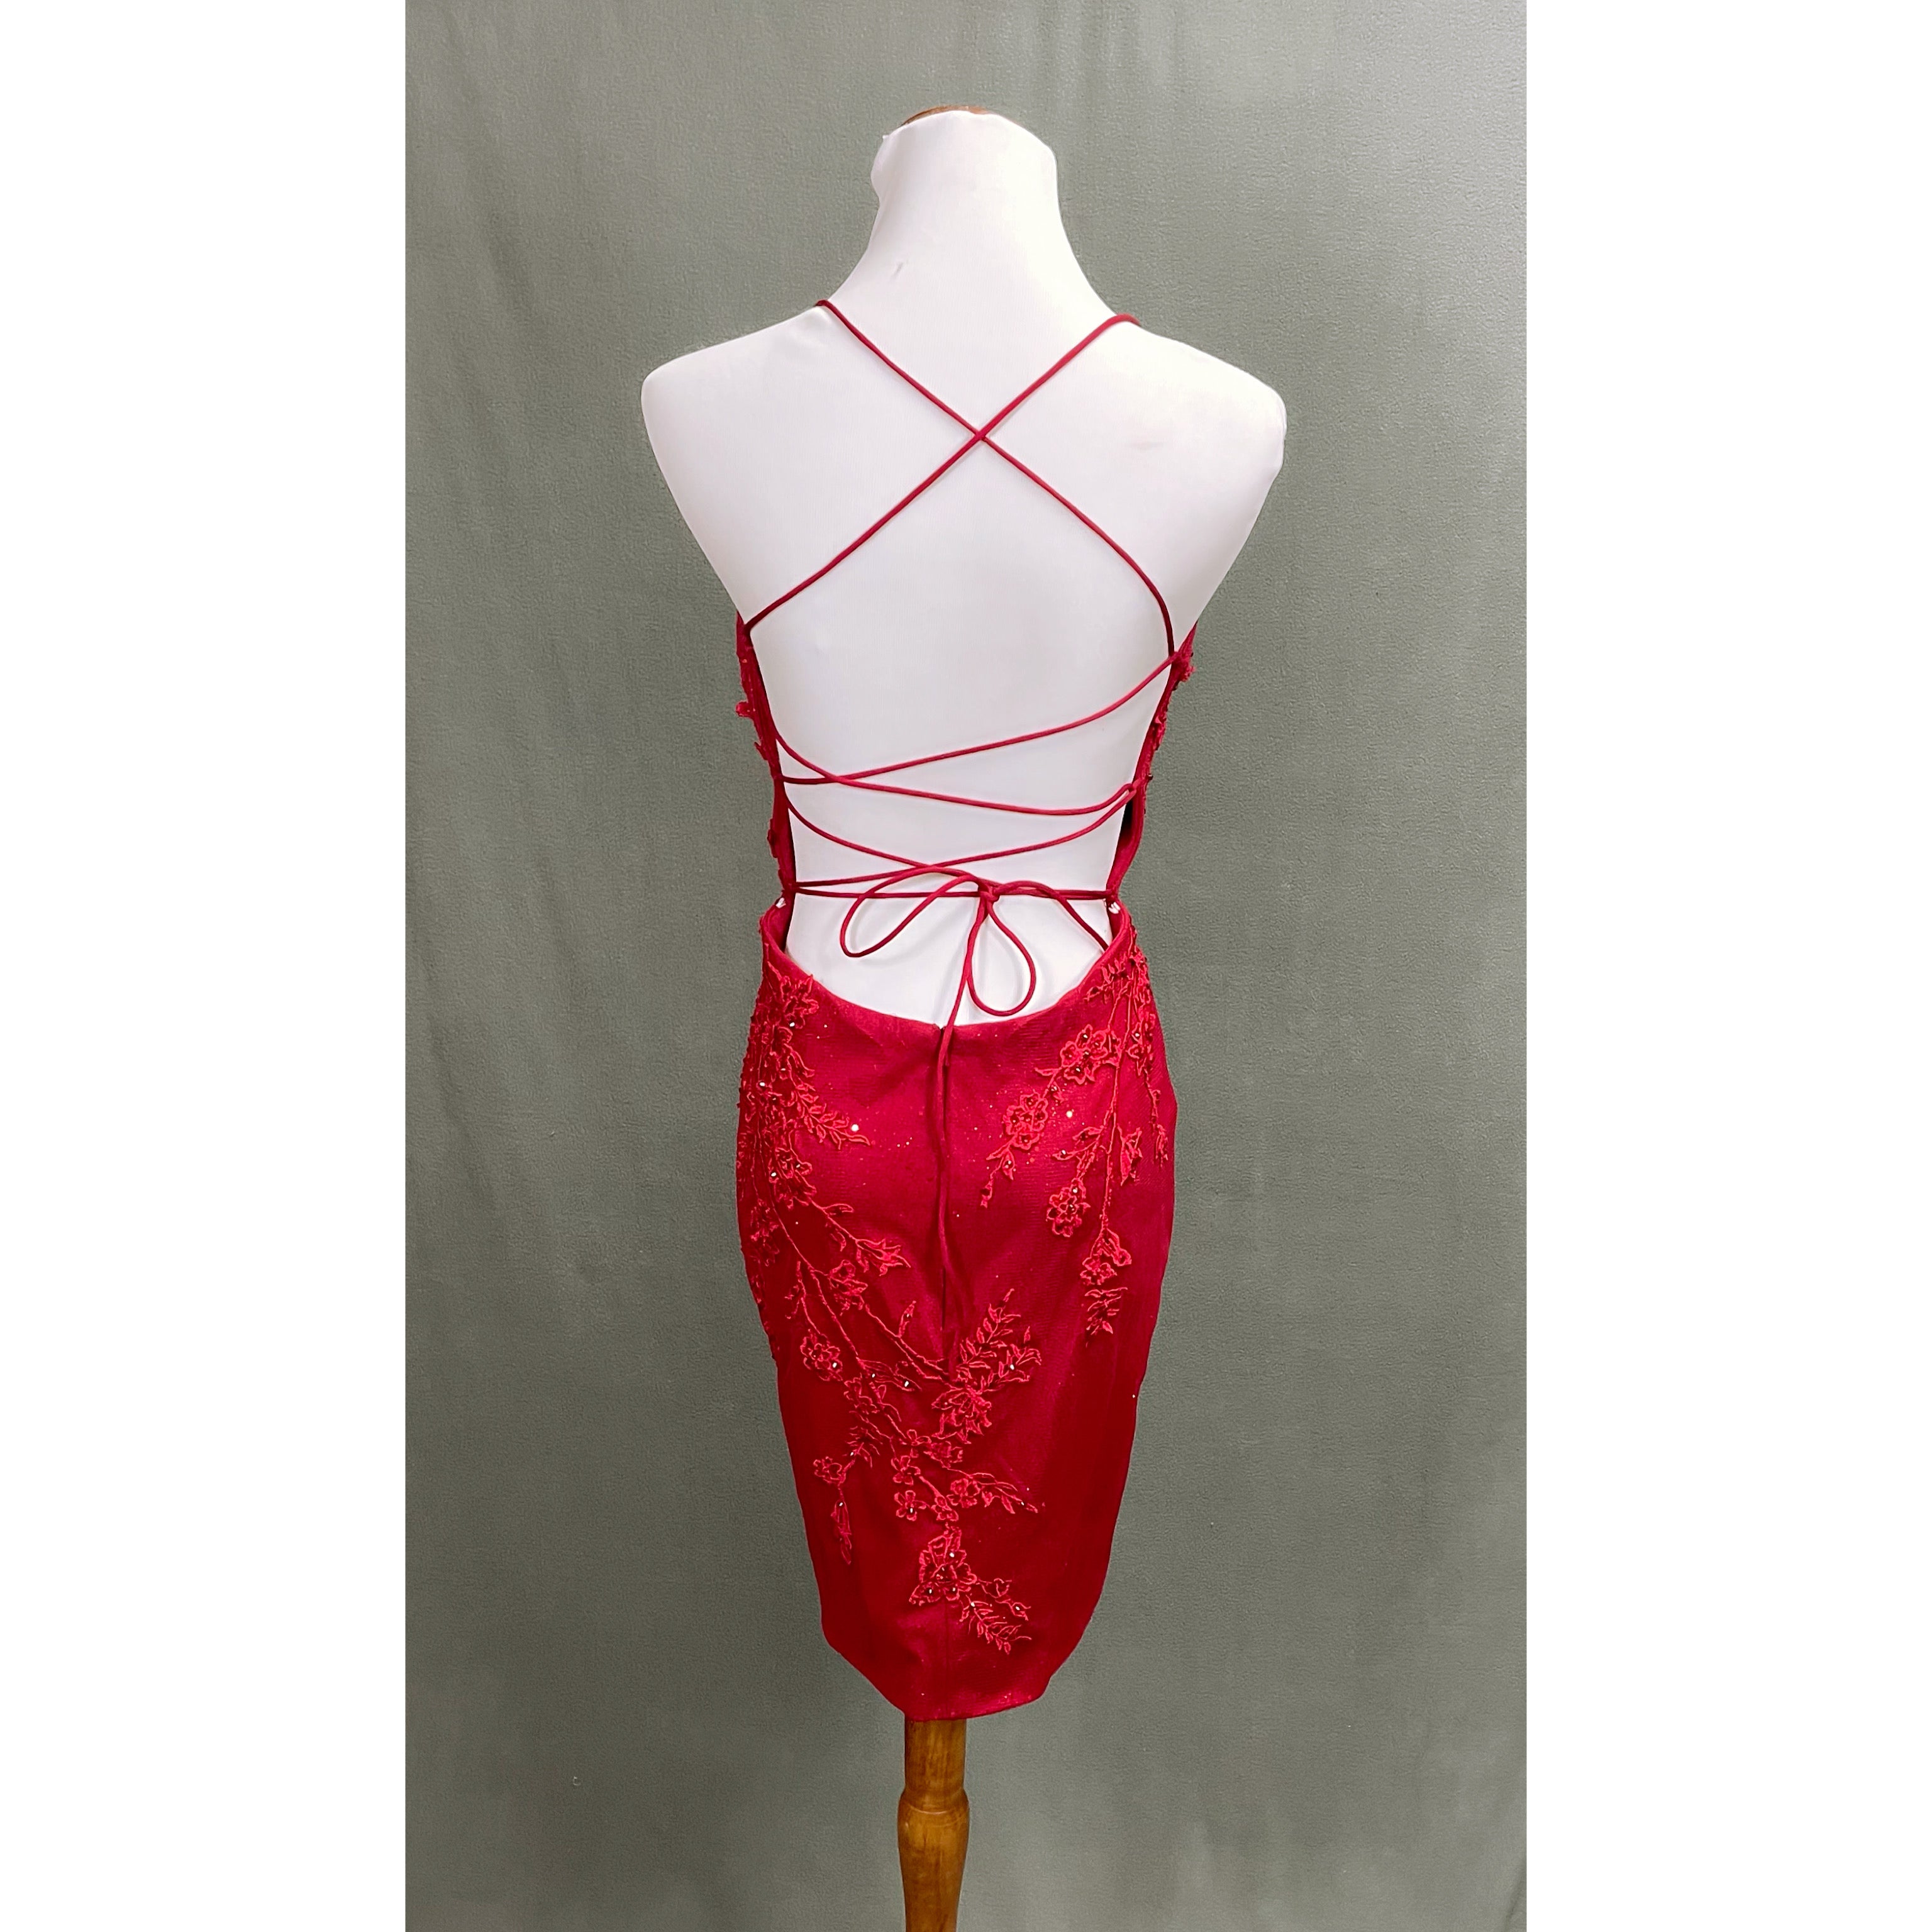 B. Darlin red dress, size 5/6